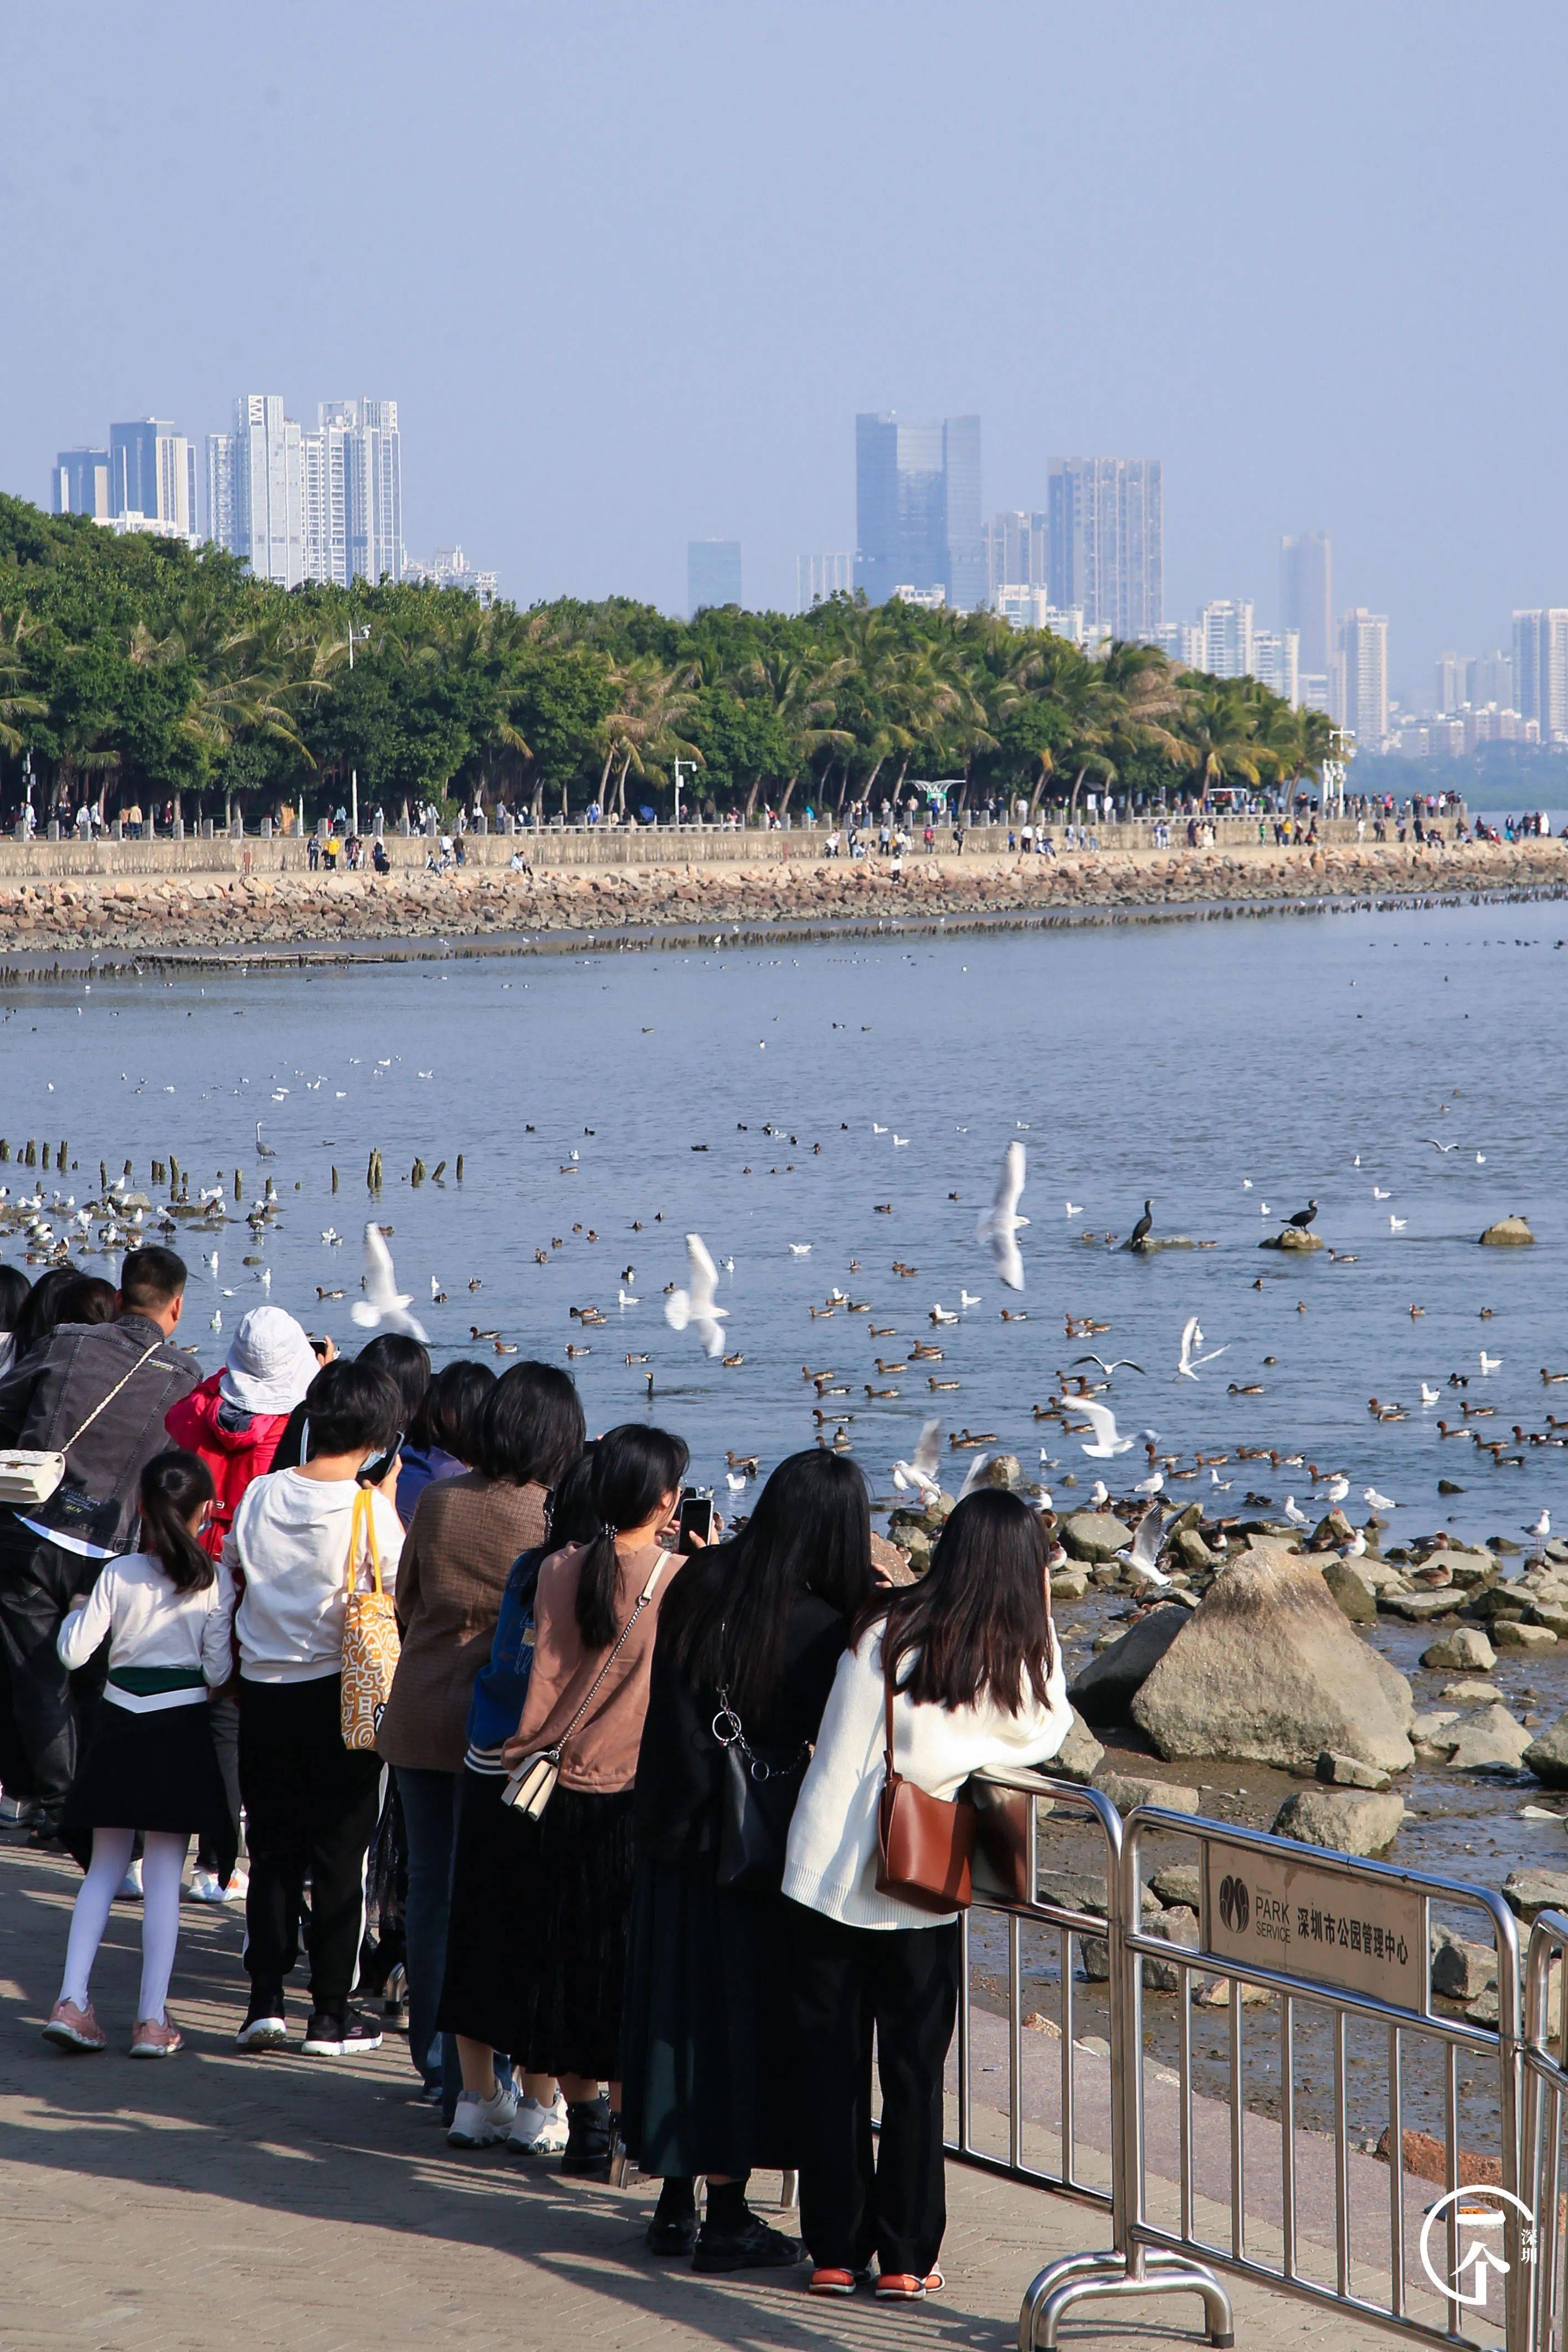 等了一年,深圳湾万鸟齐聚,绝了!